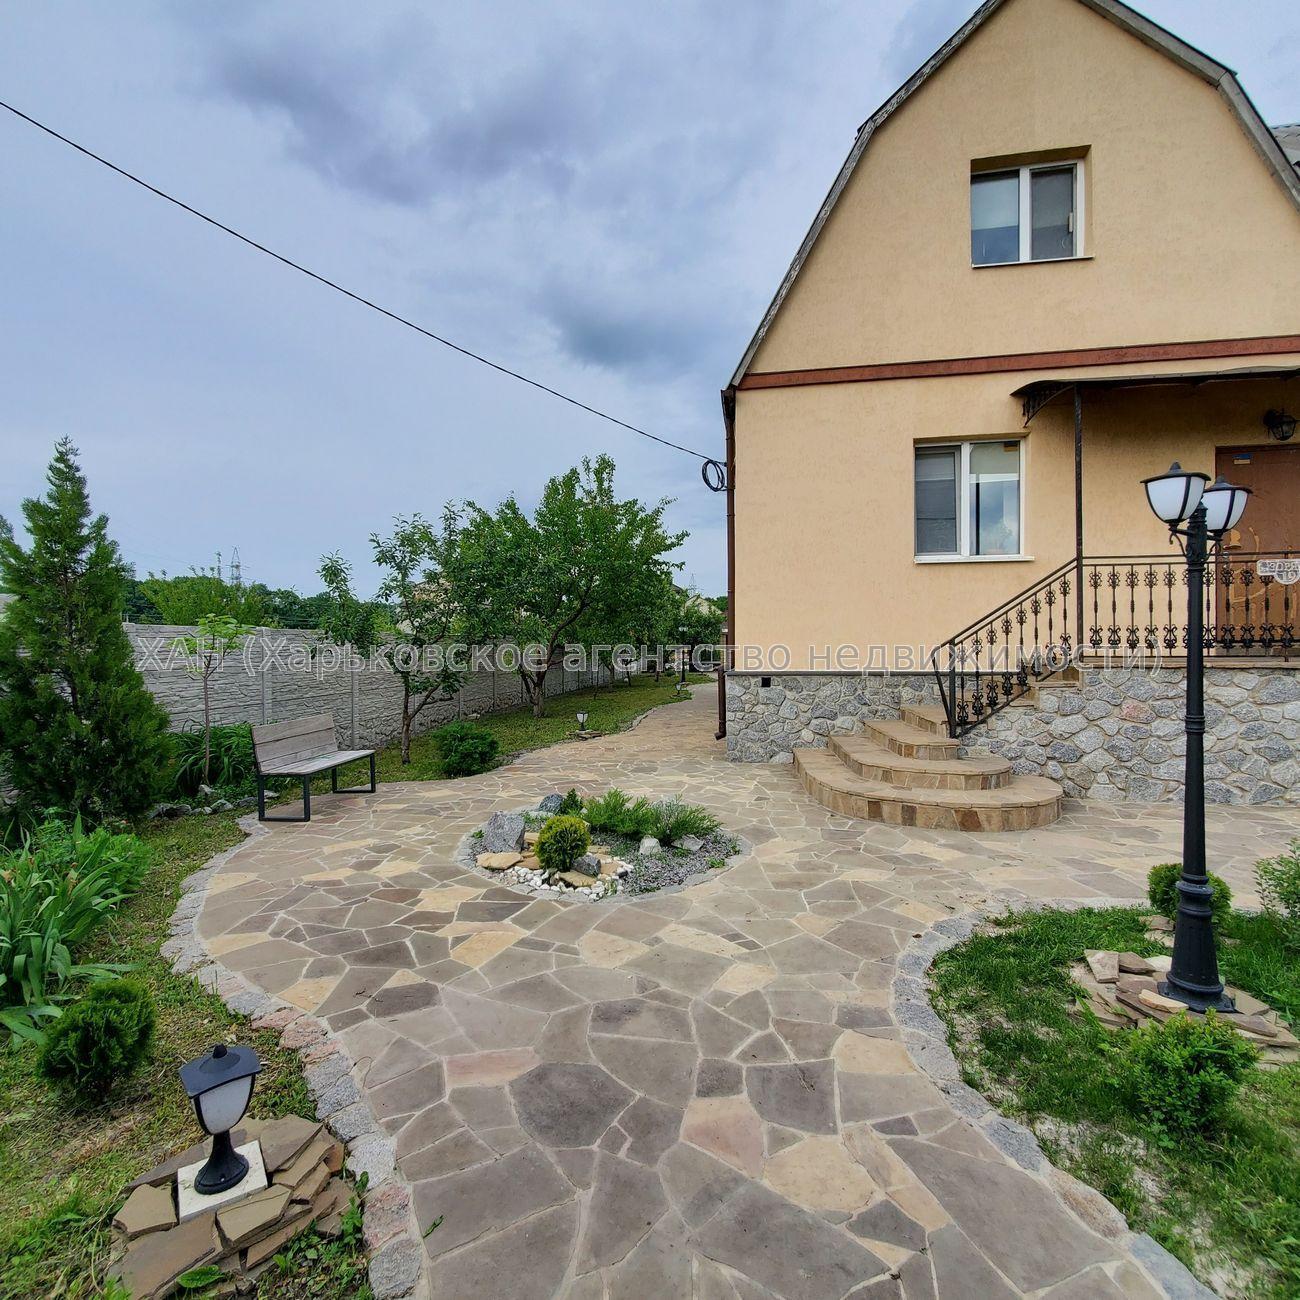 ☰ Купить дом в пригороде Харькова ❯❯ Продажа частных домов в пригороде Харькова